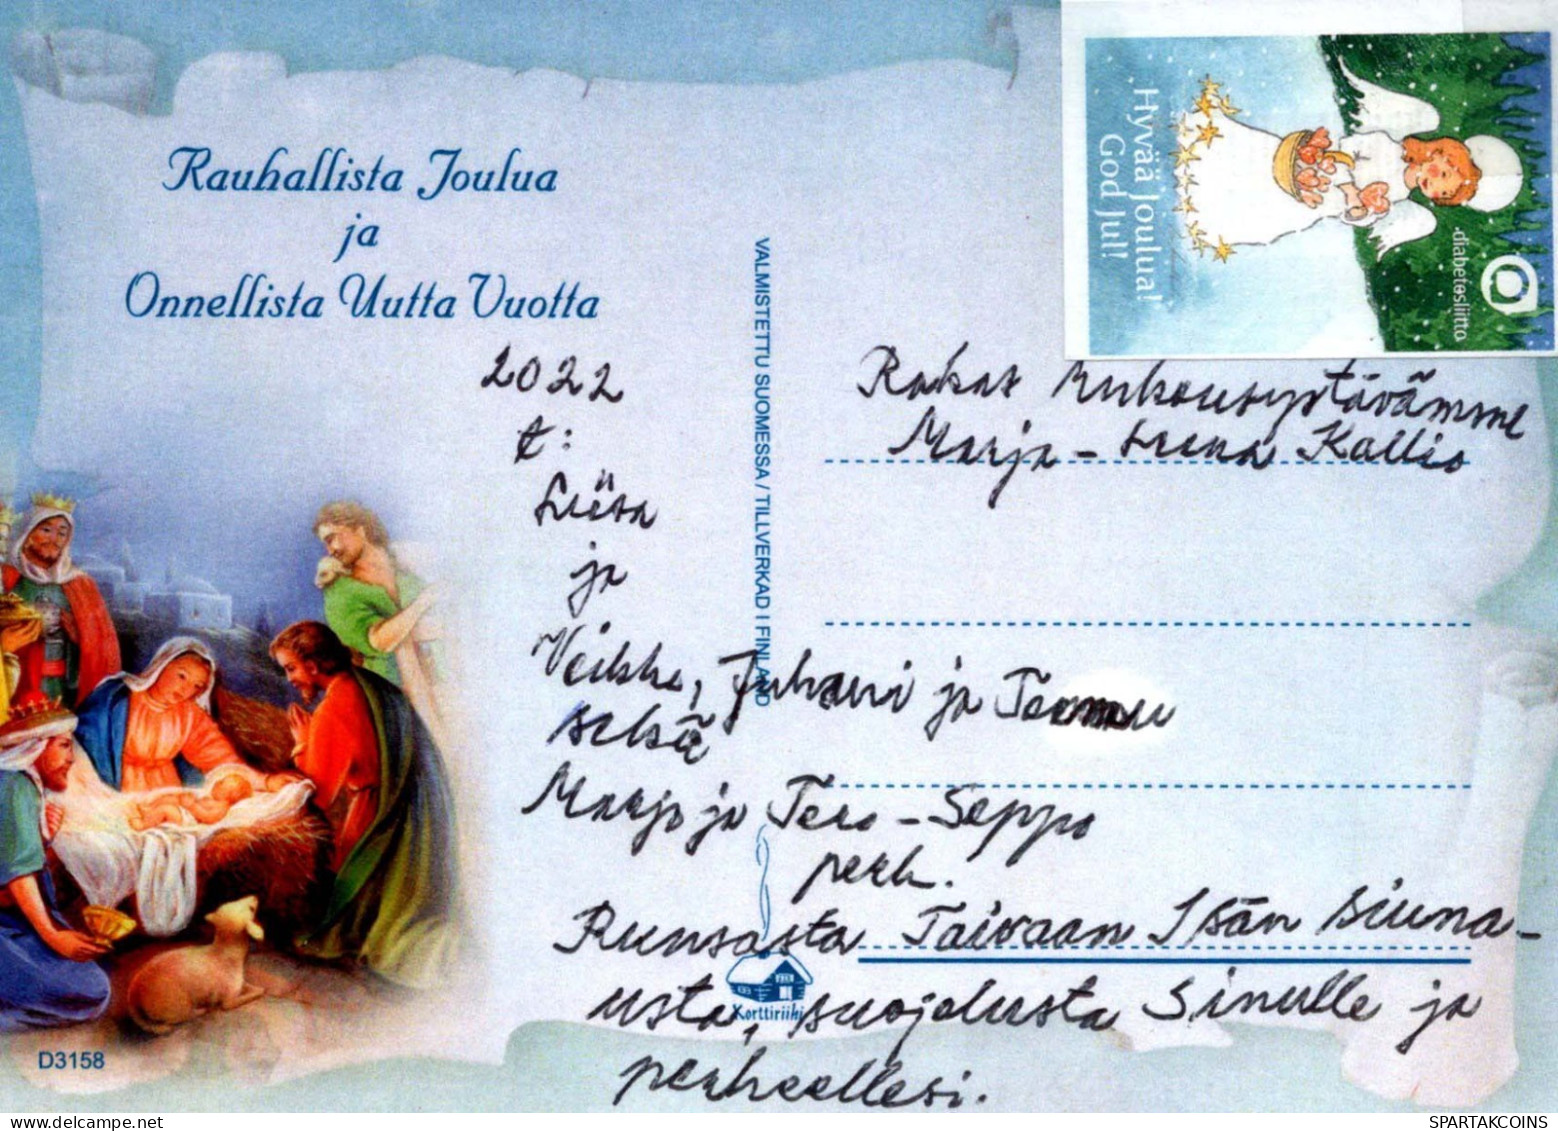 Jungfrau Maria Madonna Jesuskind Weihnachten Religion Vintage Ansichtskarte Postkarte CPSM #PBB998.DE - Vierge Marie & Madones